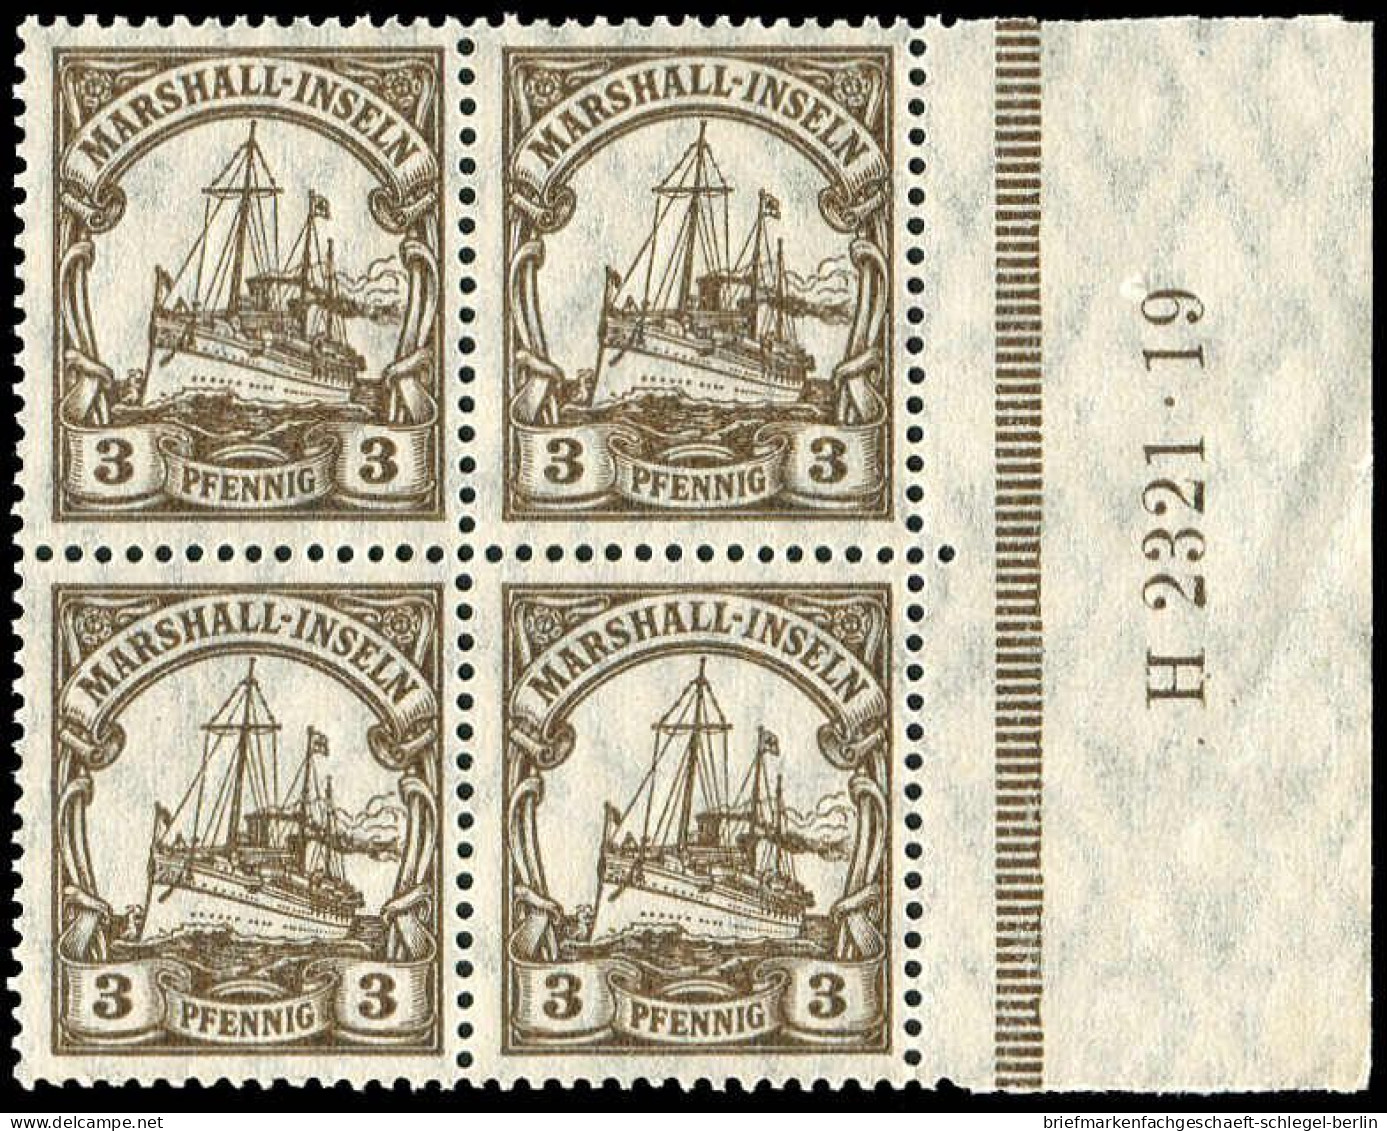 Deutsche Kolonien Marshall-Inseln, 1916, 26 HAN, Postfrisch - Marshall Islands